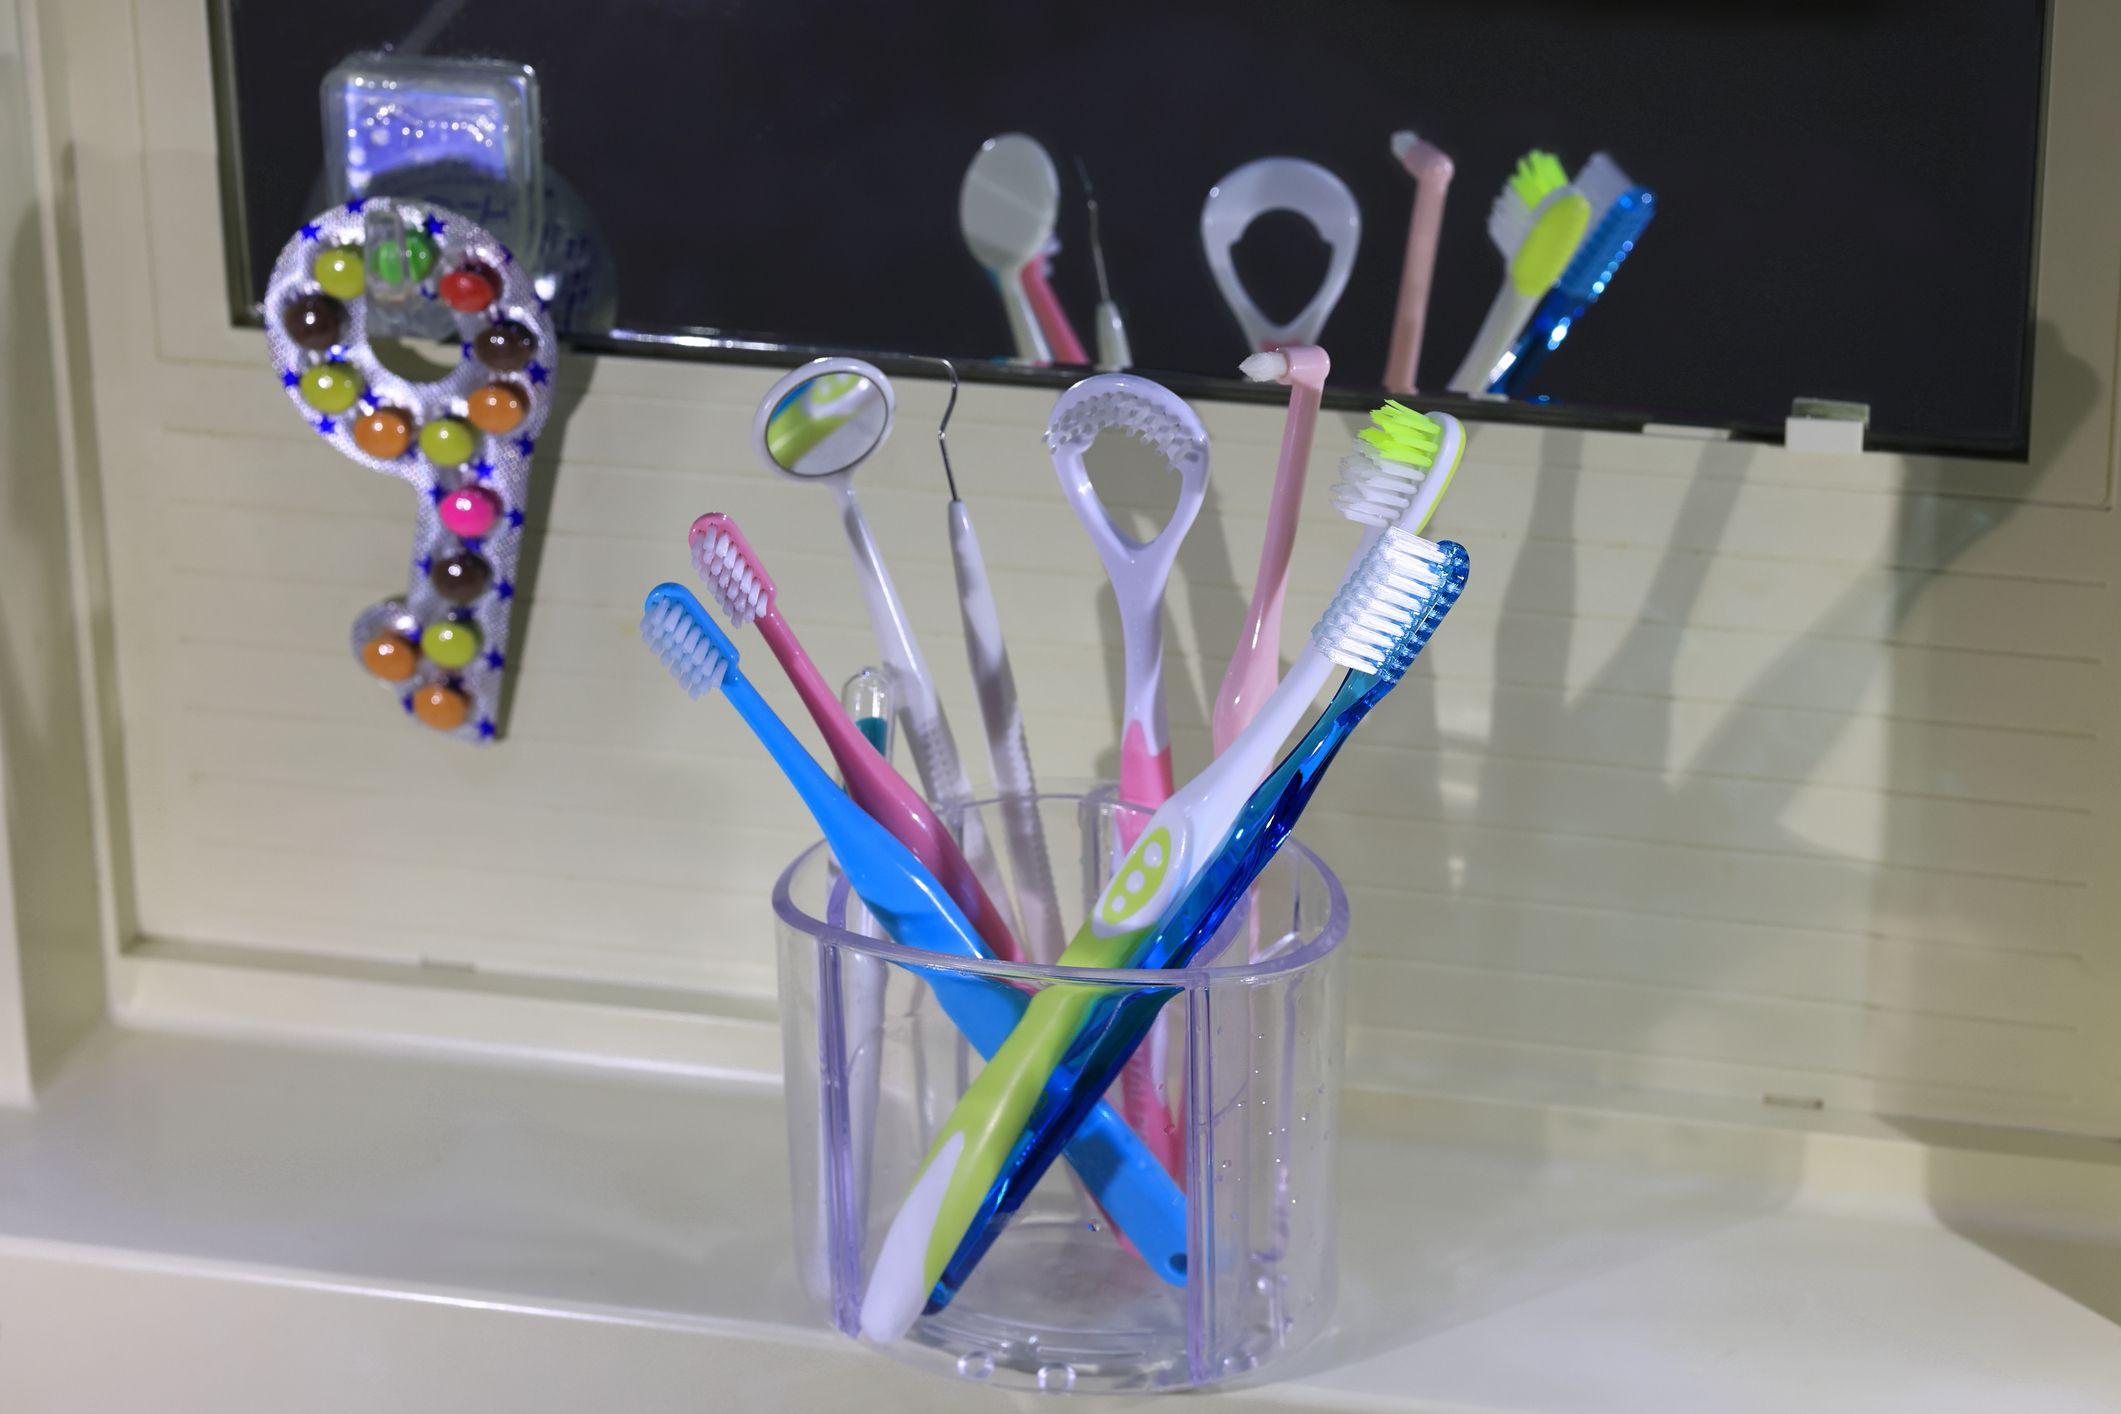 Varios implementos de higiene oral en un baño